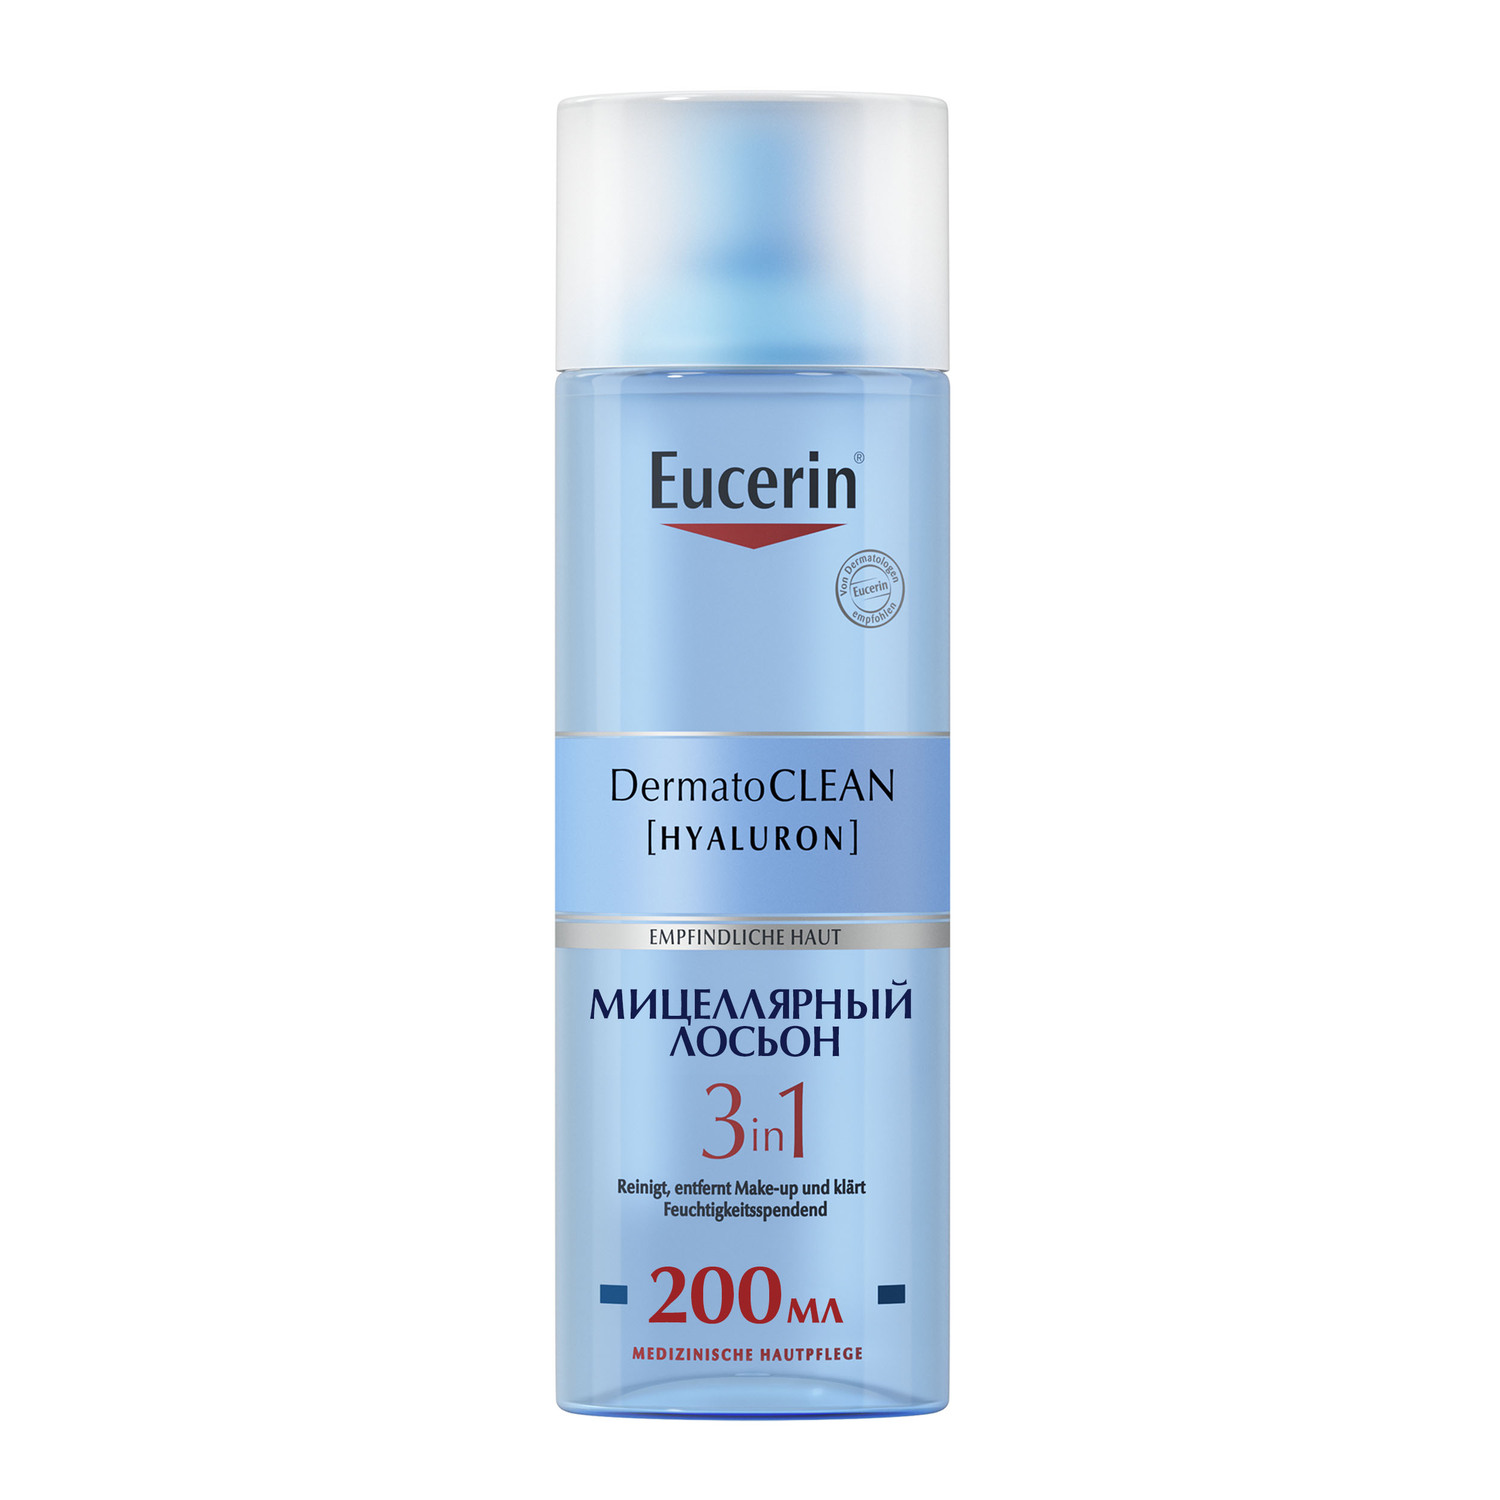 Эуцерин Освежающий и очищающий мицеллярный лосьон 3 в 1, 200 мл (Eucerin, DermatoClean) фото 0